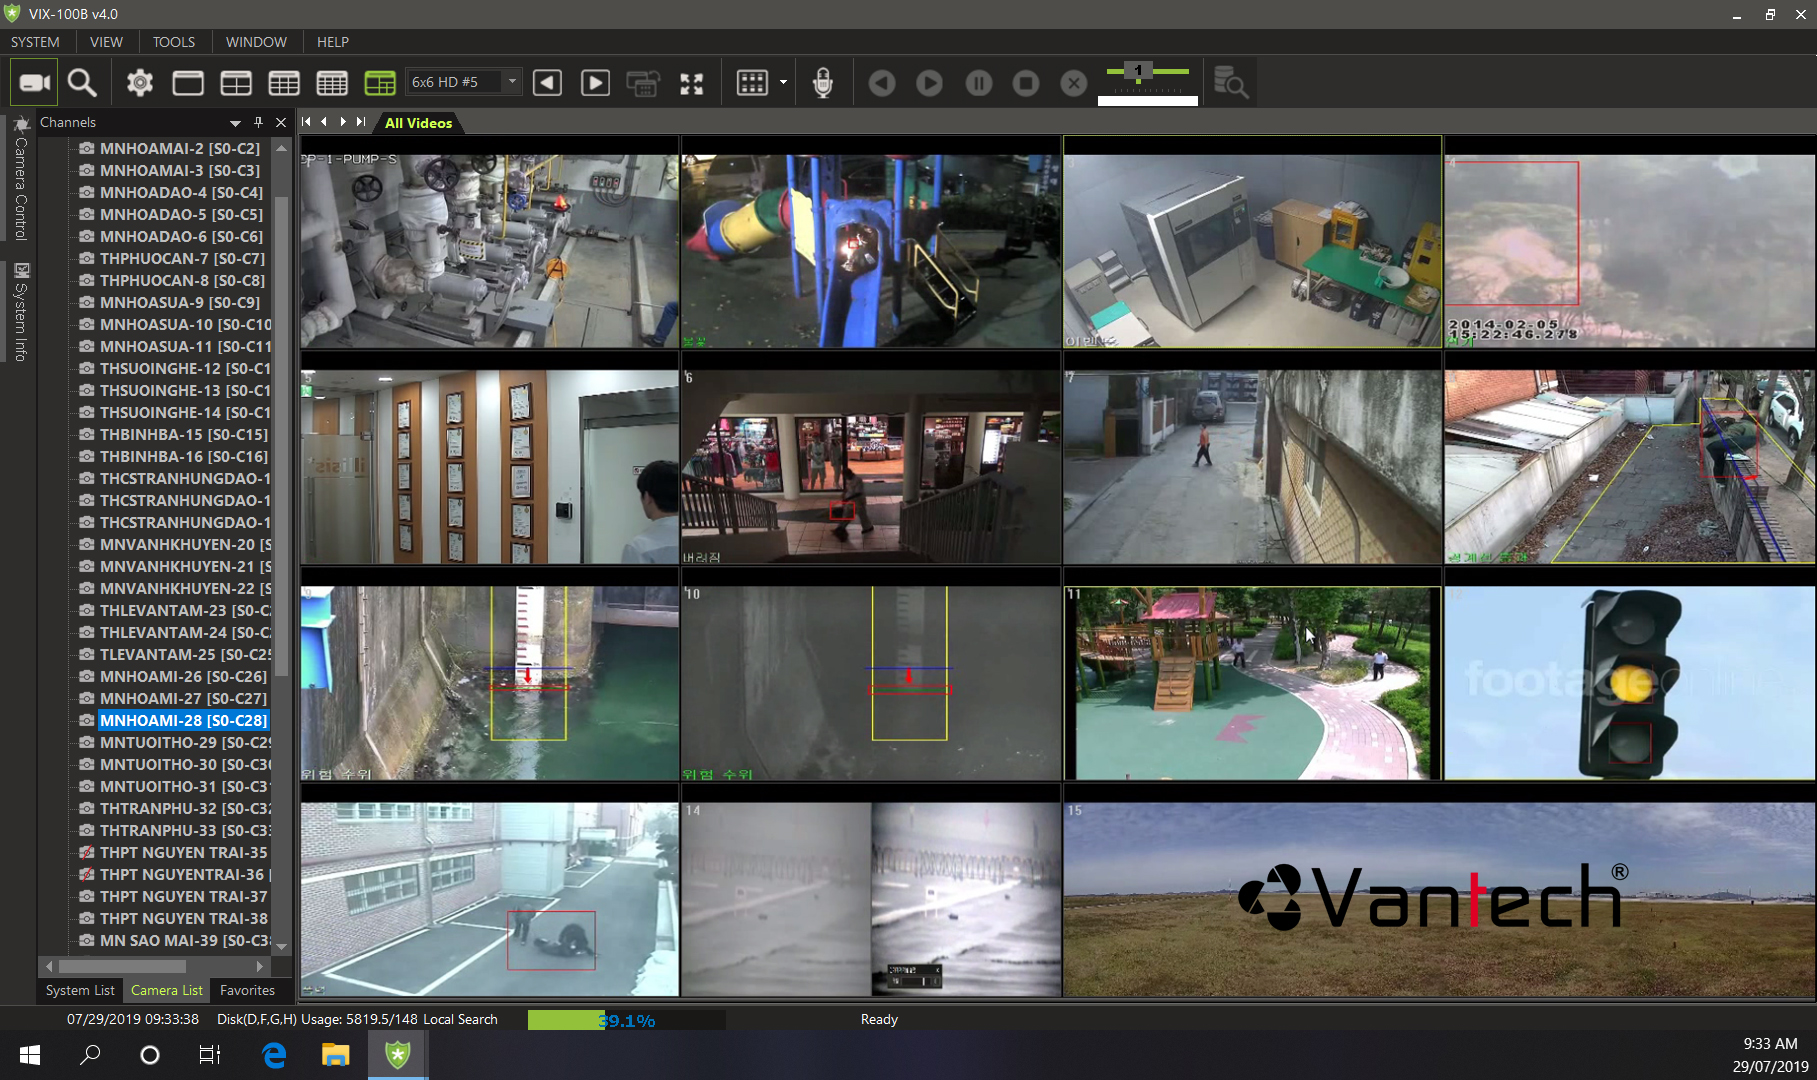 Vantech tích hợp công nghệ phân tích hình ảnh và video thông minh